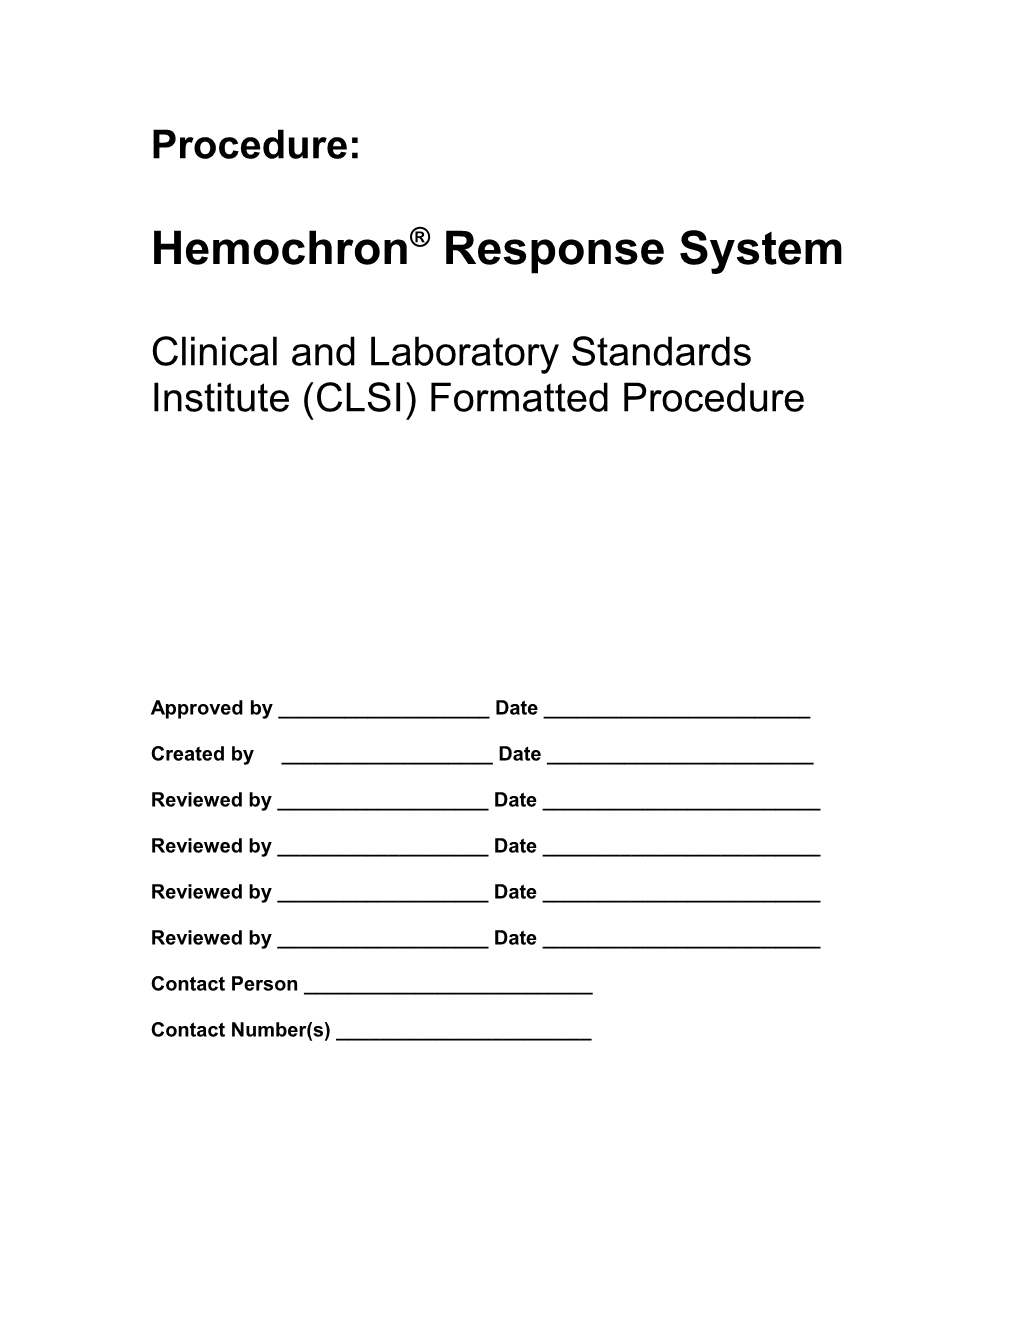 Hemochron Response System